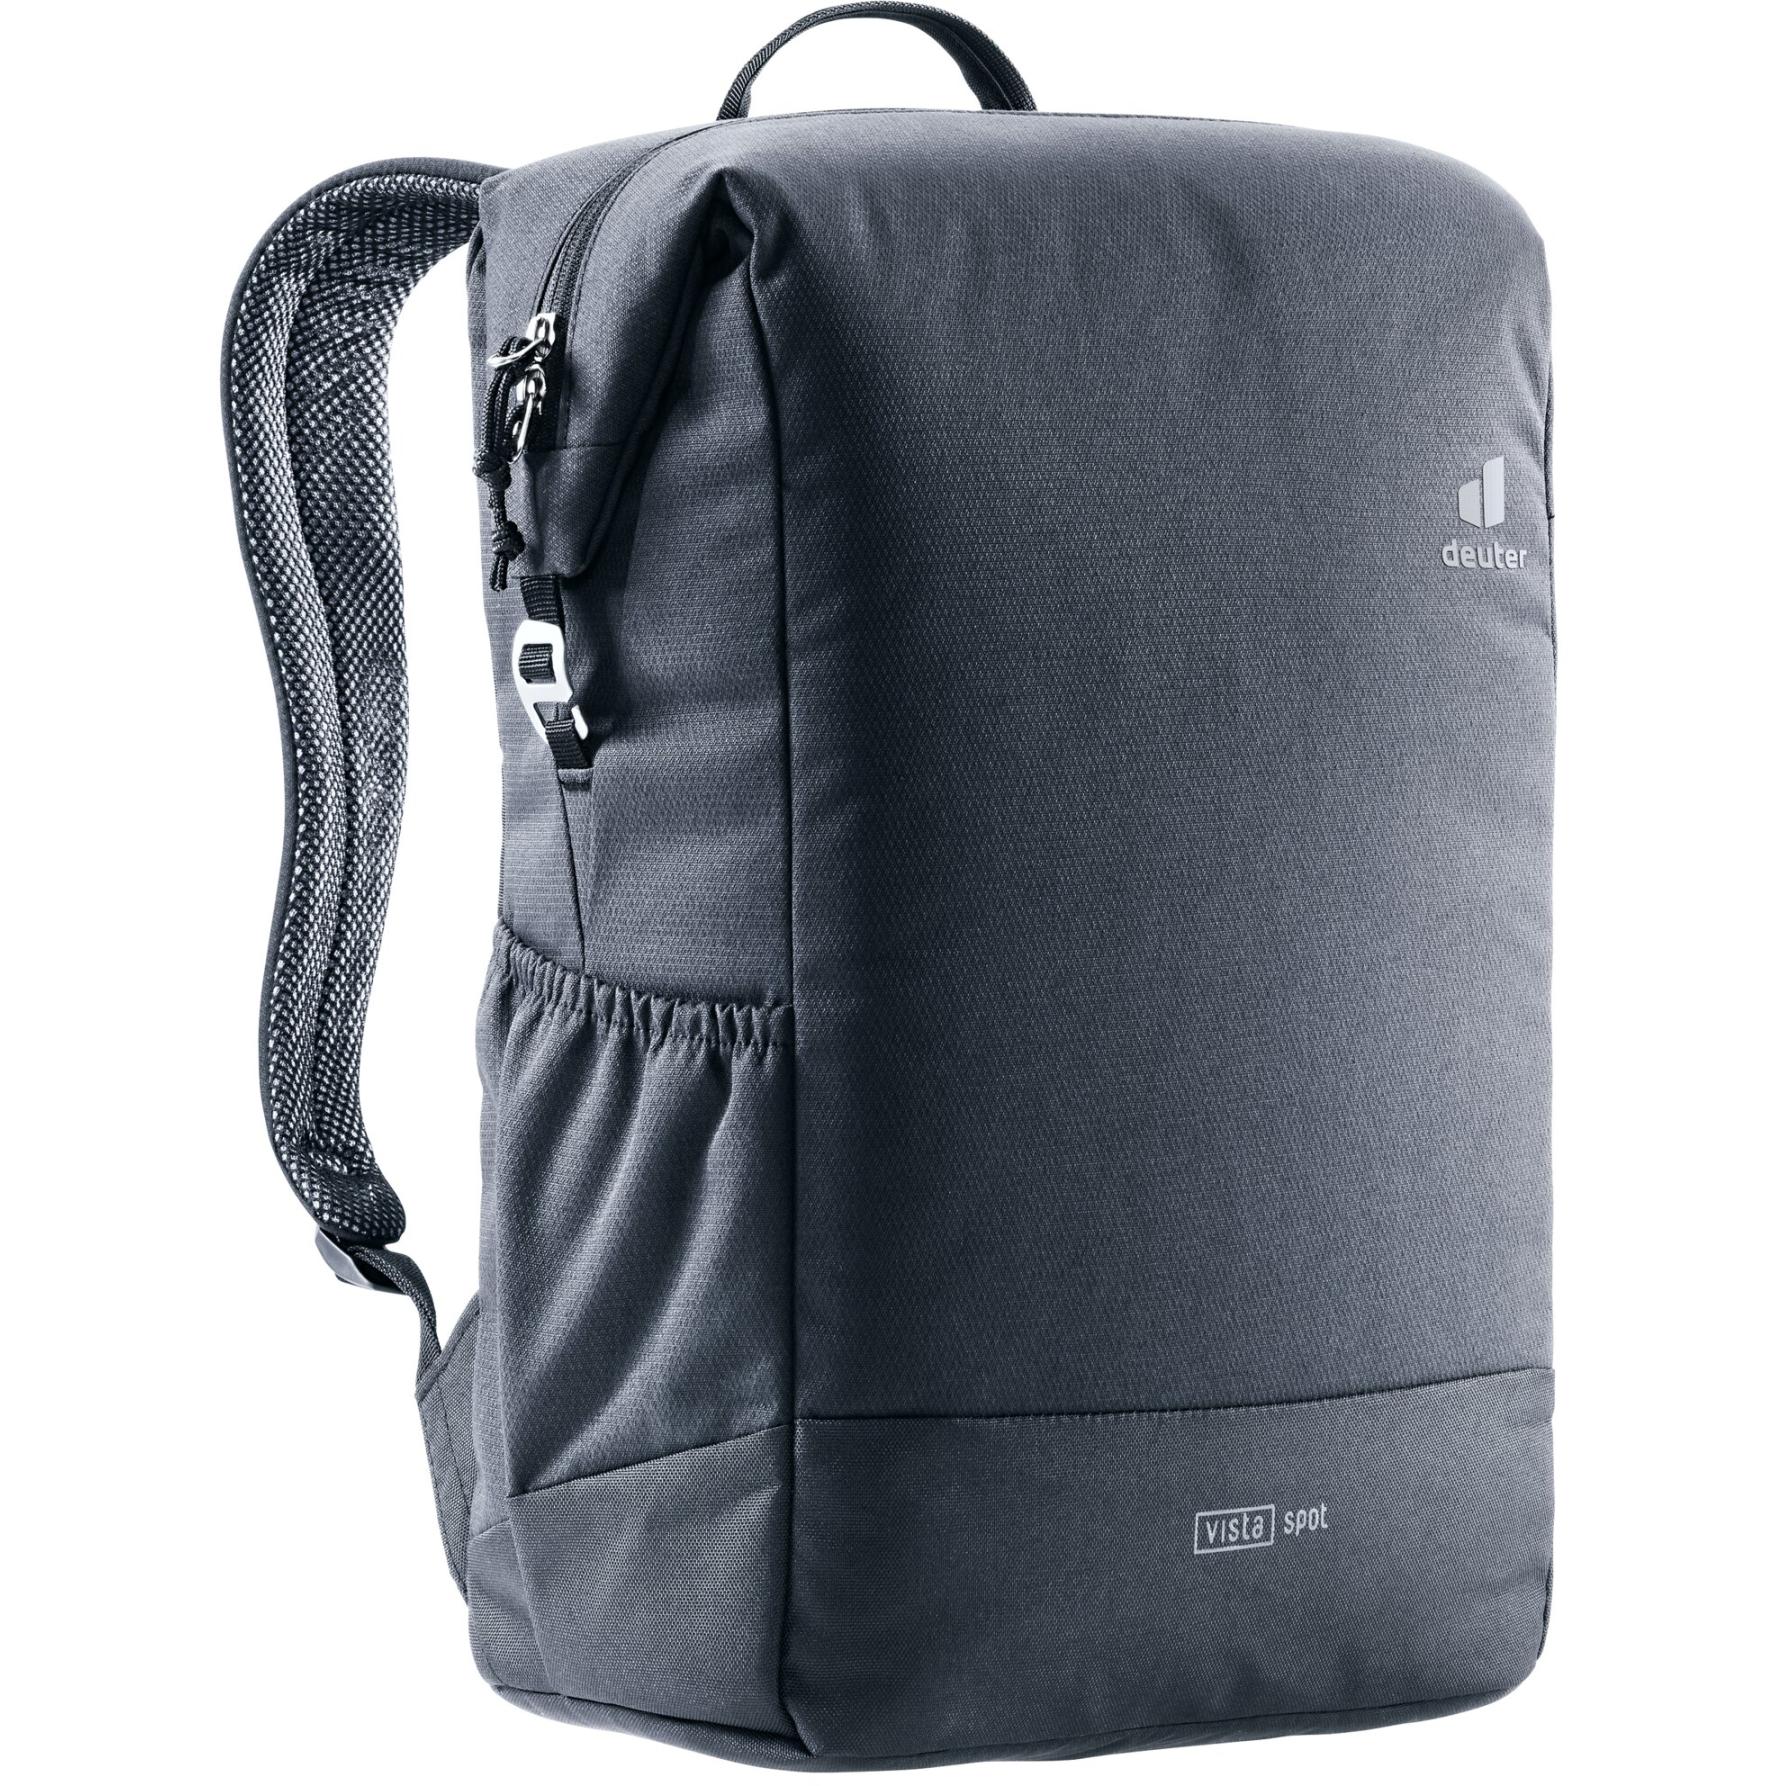 Productfoto van Deuter Vista Spot Backpack 18L - black